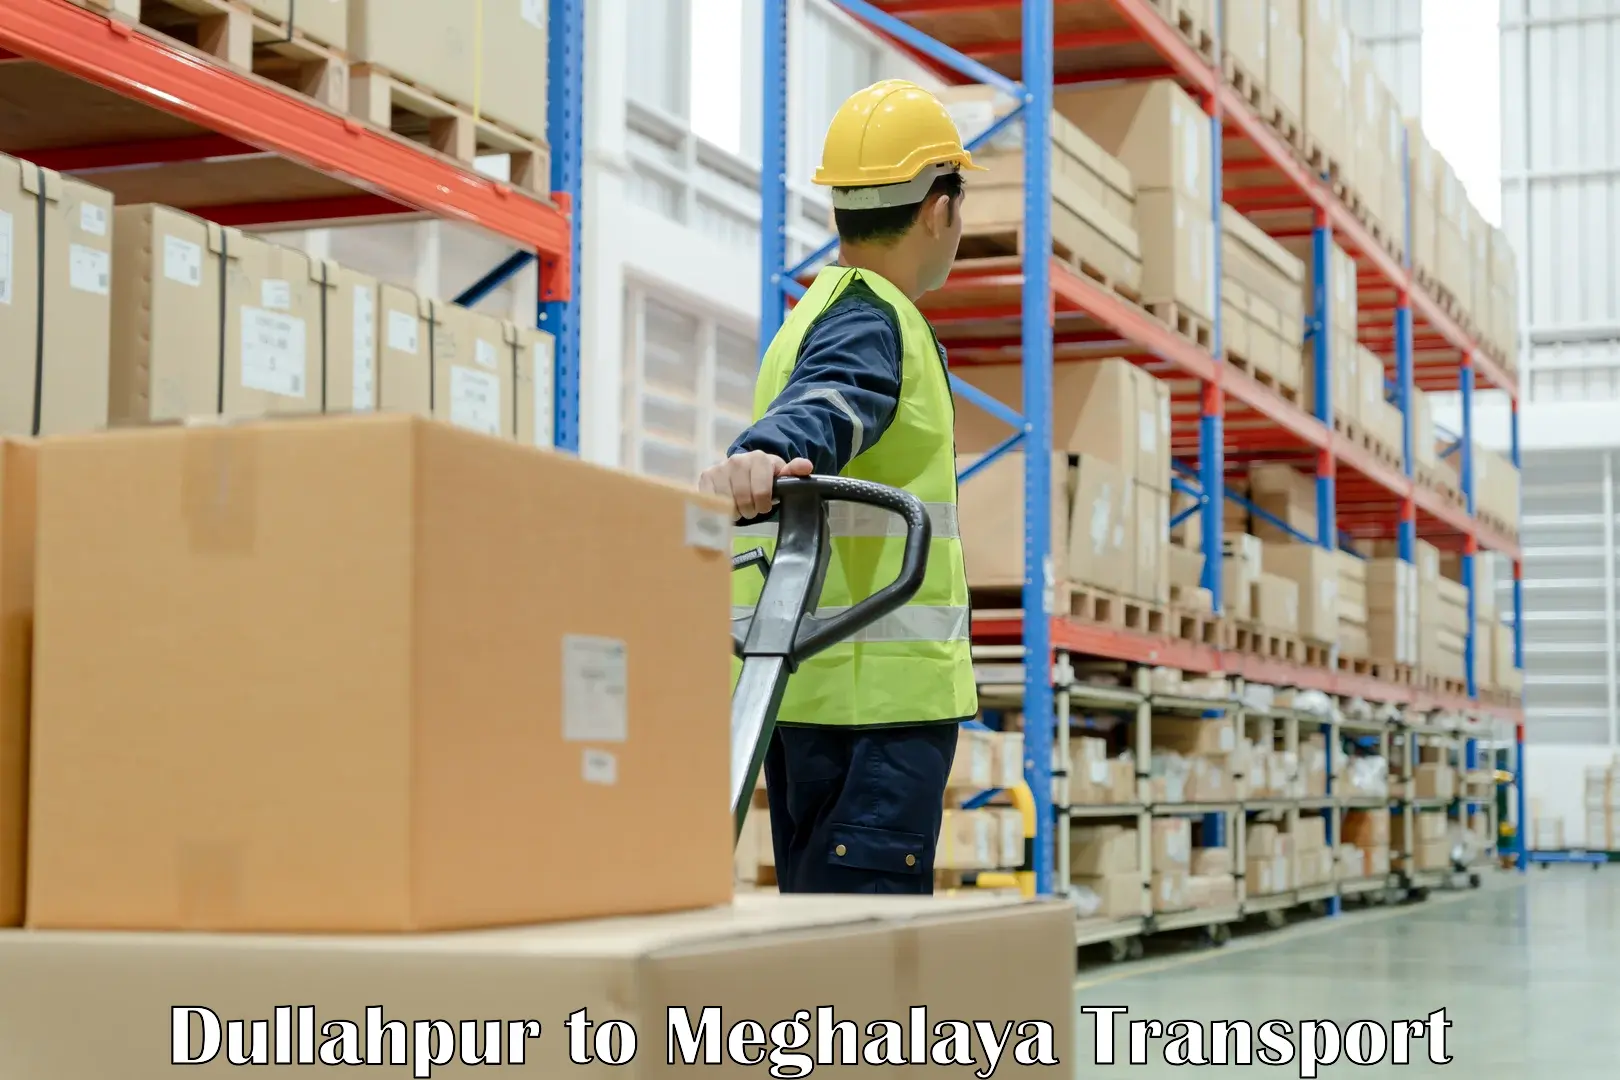 Shipping partner Dullahpur to Meghalaya